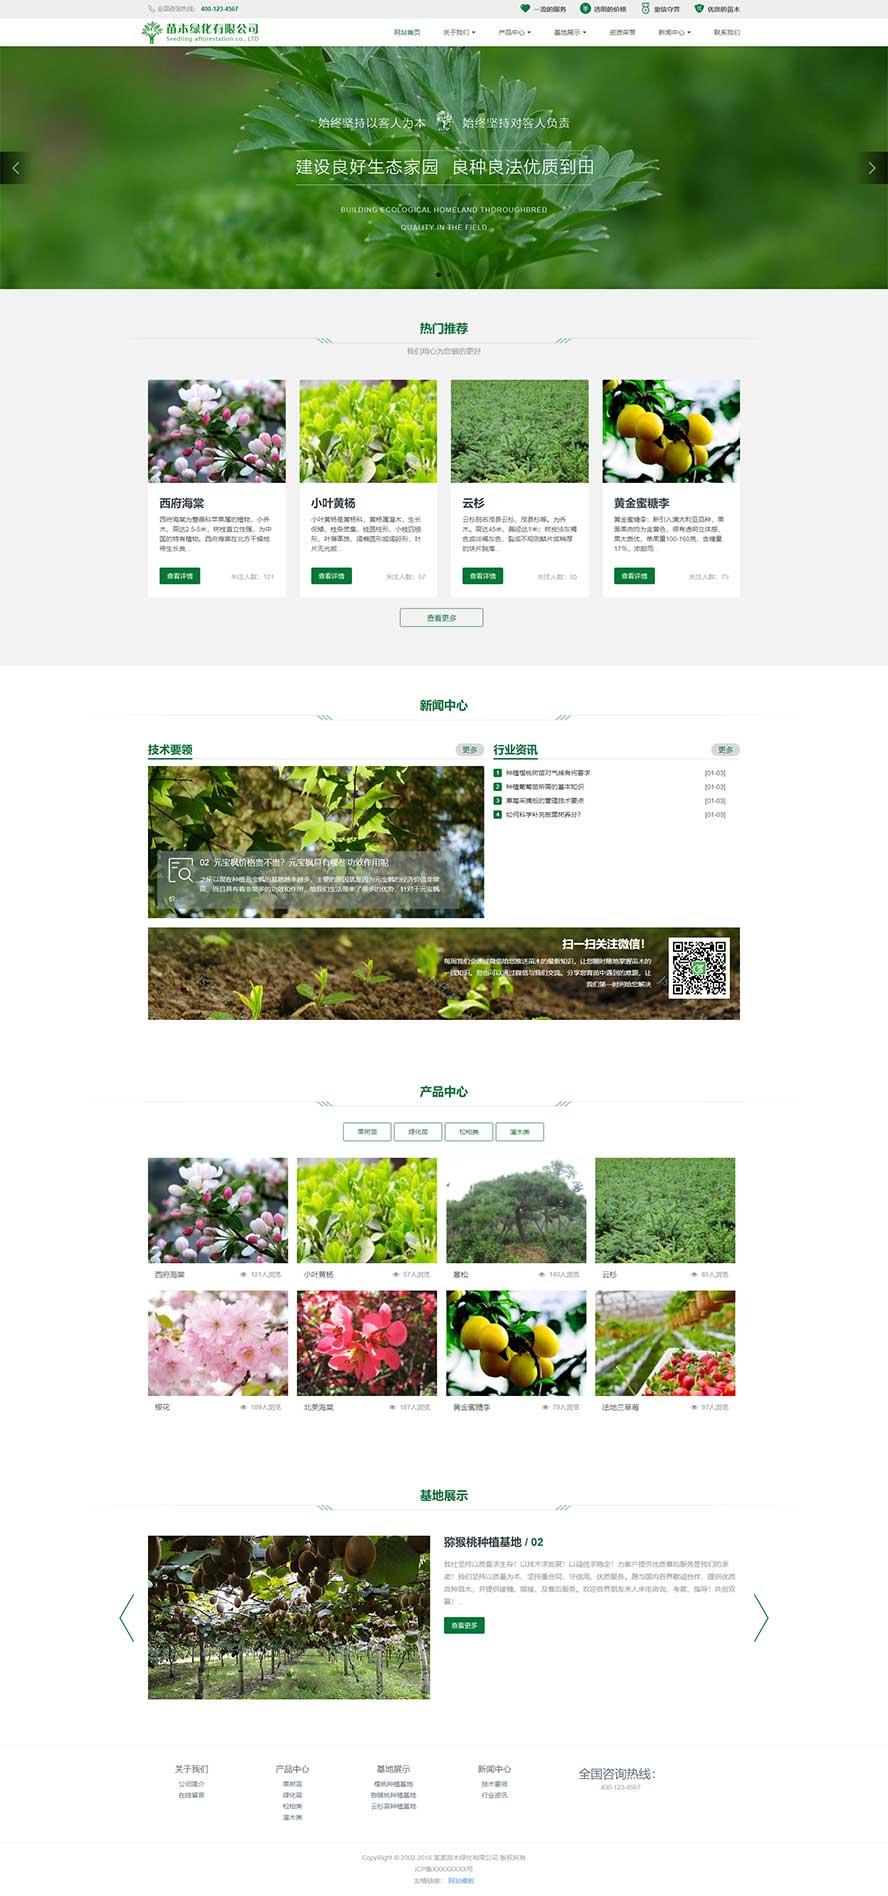 苗木培育网页模板,绿化网页模板,种植基地网页模板